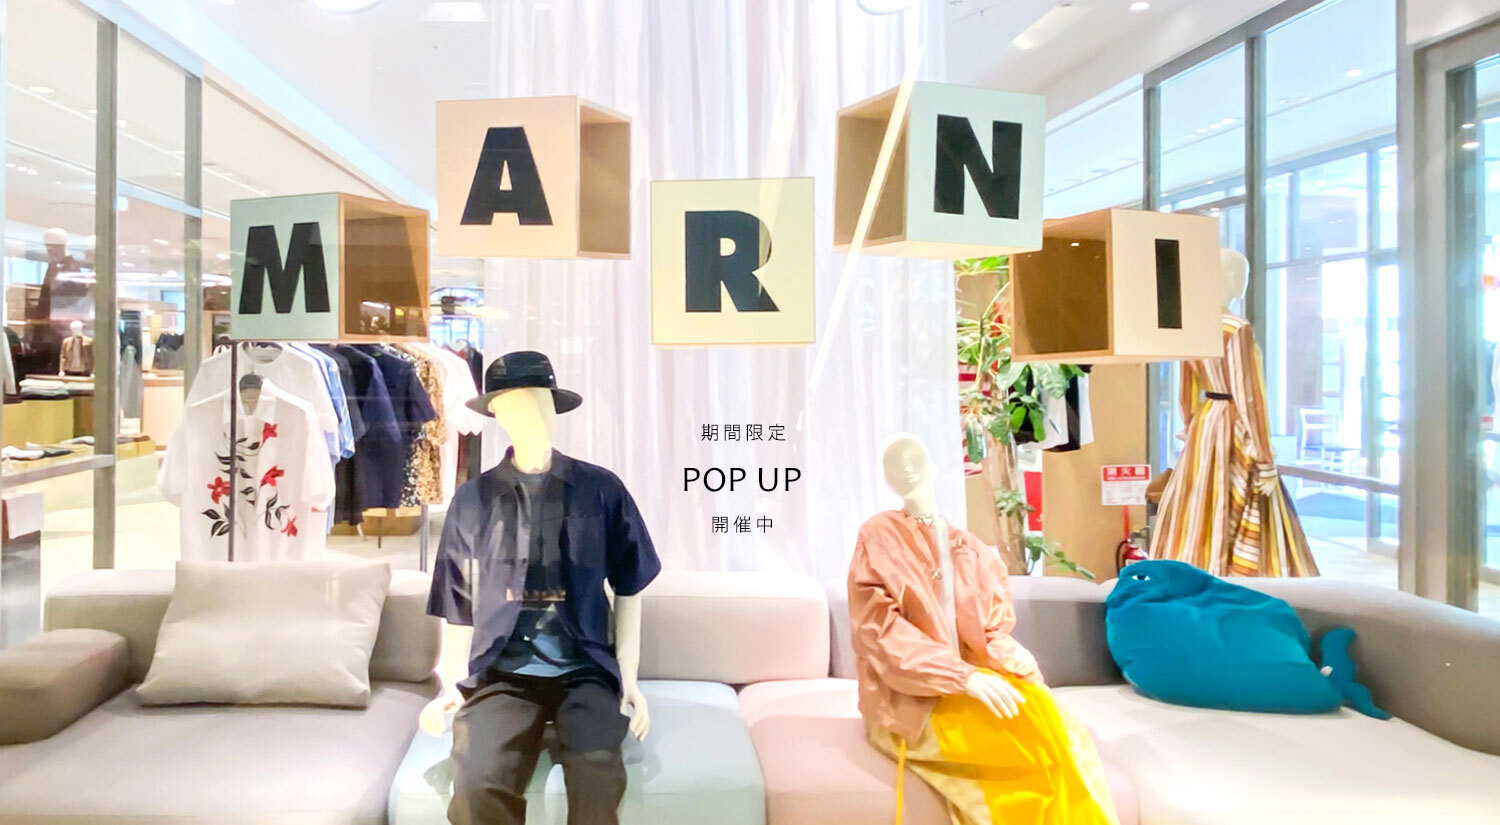 Marni Popup 開催 メンズセレクトショップguji Online Shop 京都メンズセレクトショップguji グジ オンラインショップ